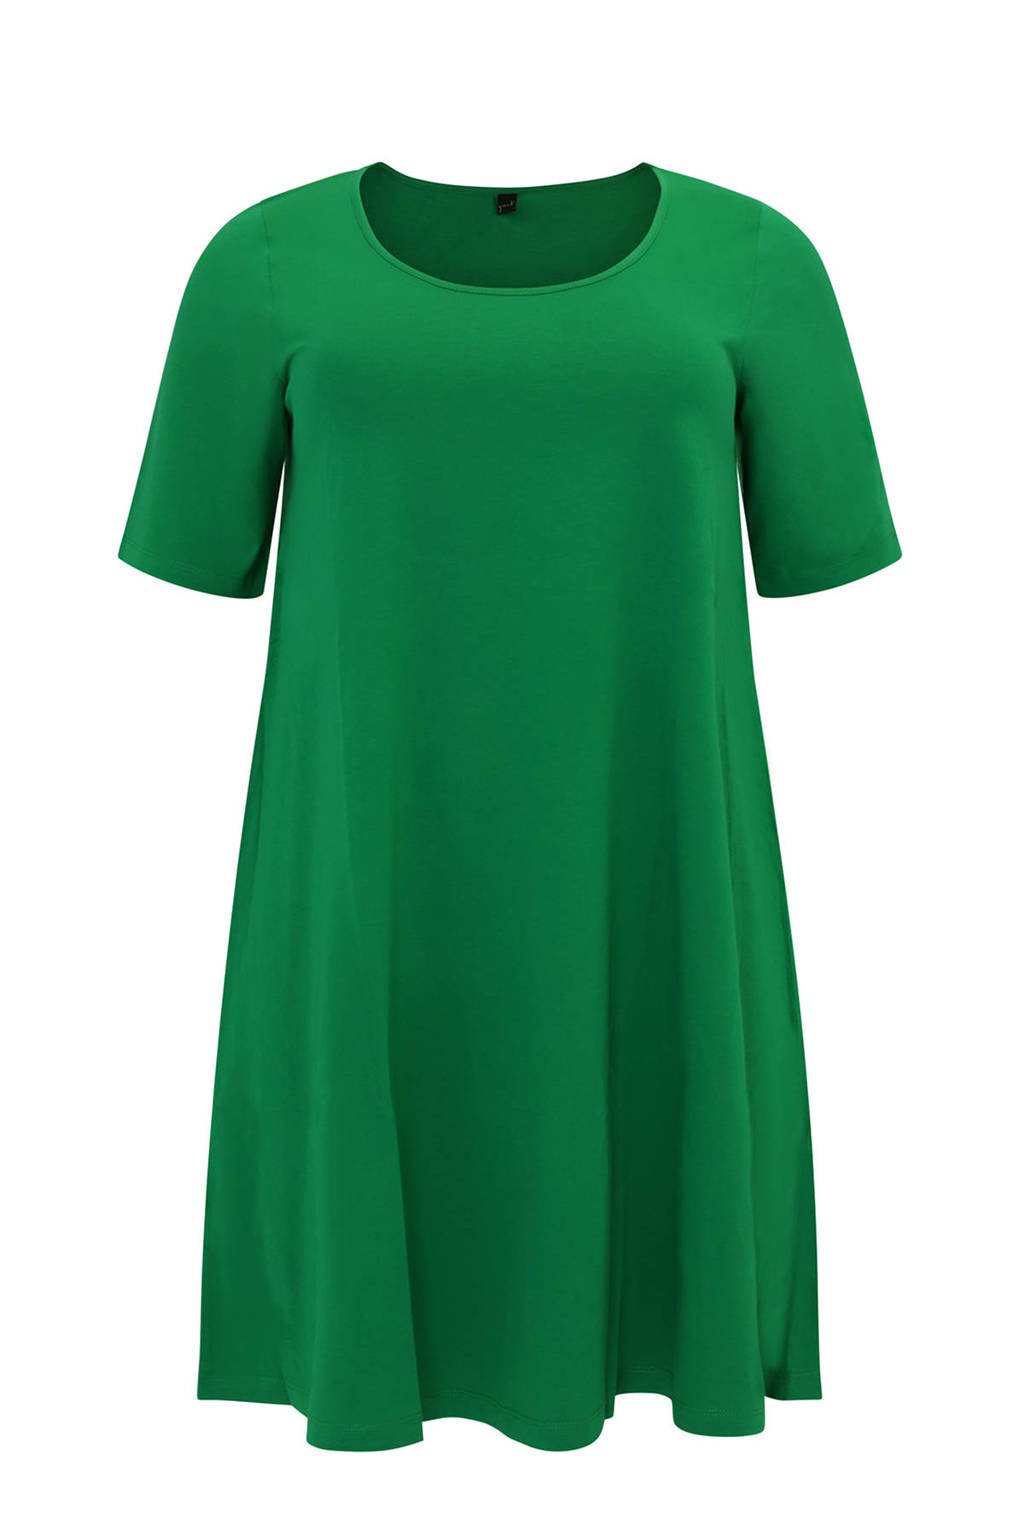 Yoek a-lijn jurk groen